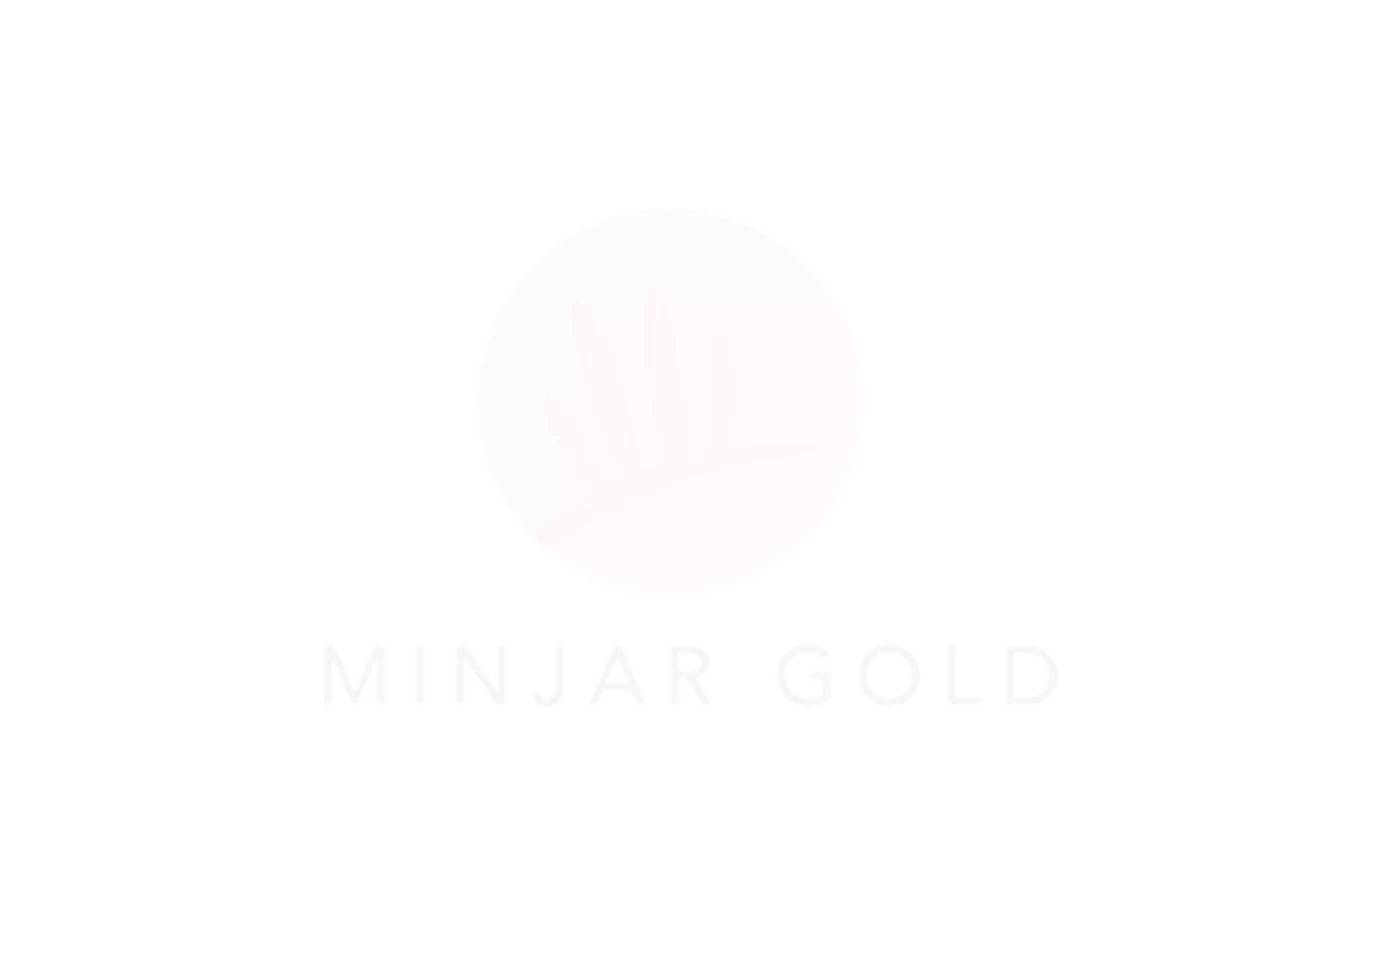 Minjar Gold